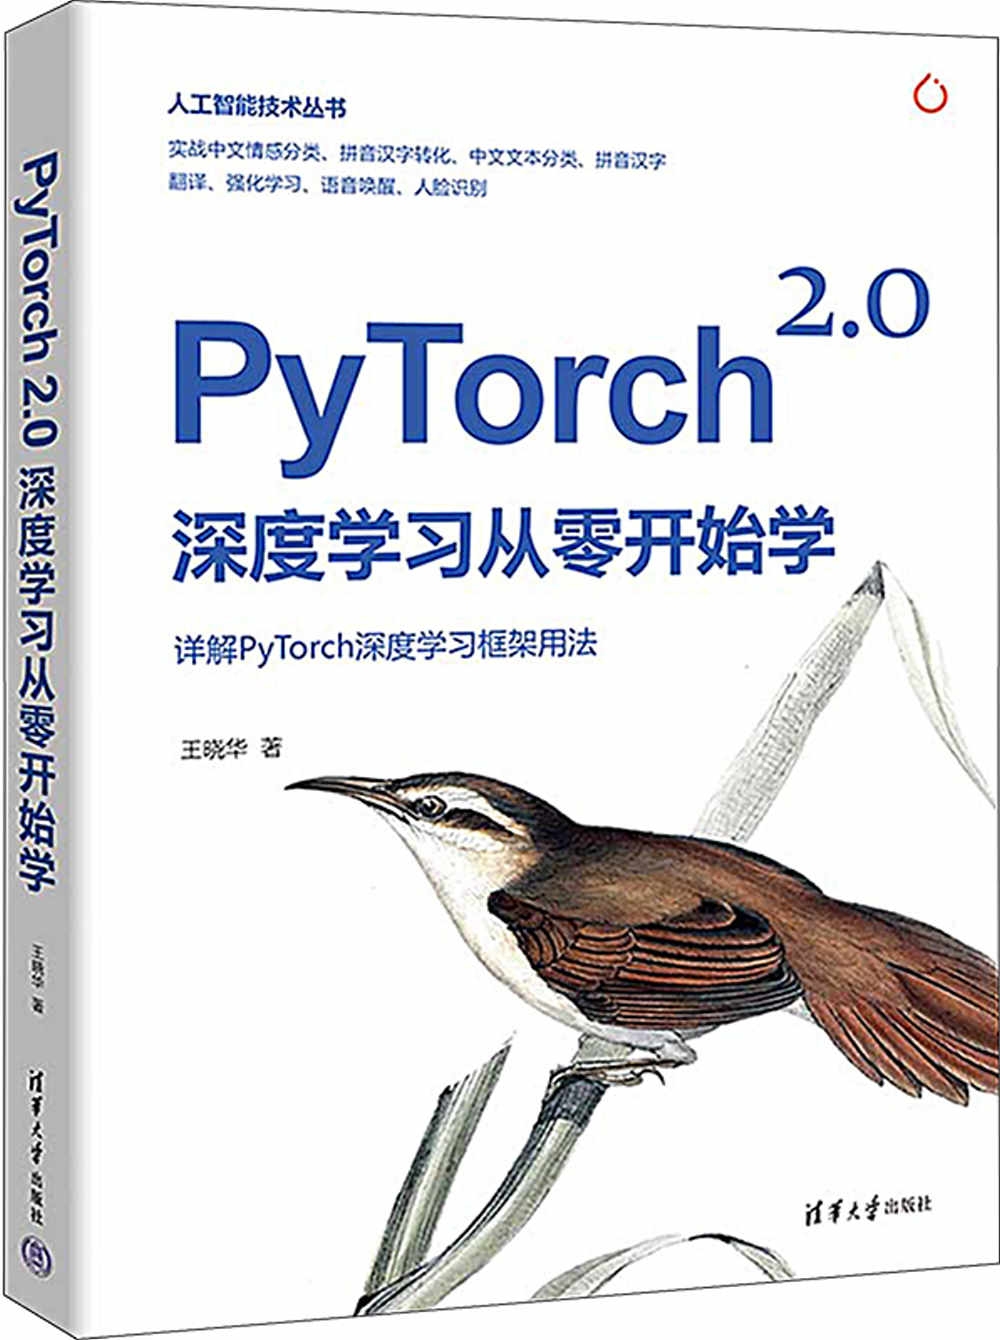 PyTorch2.0深度學習從零開始學